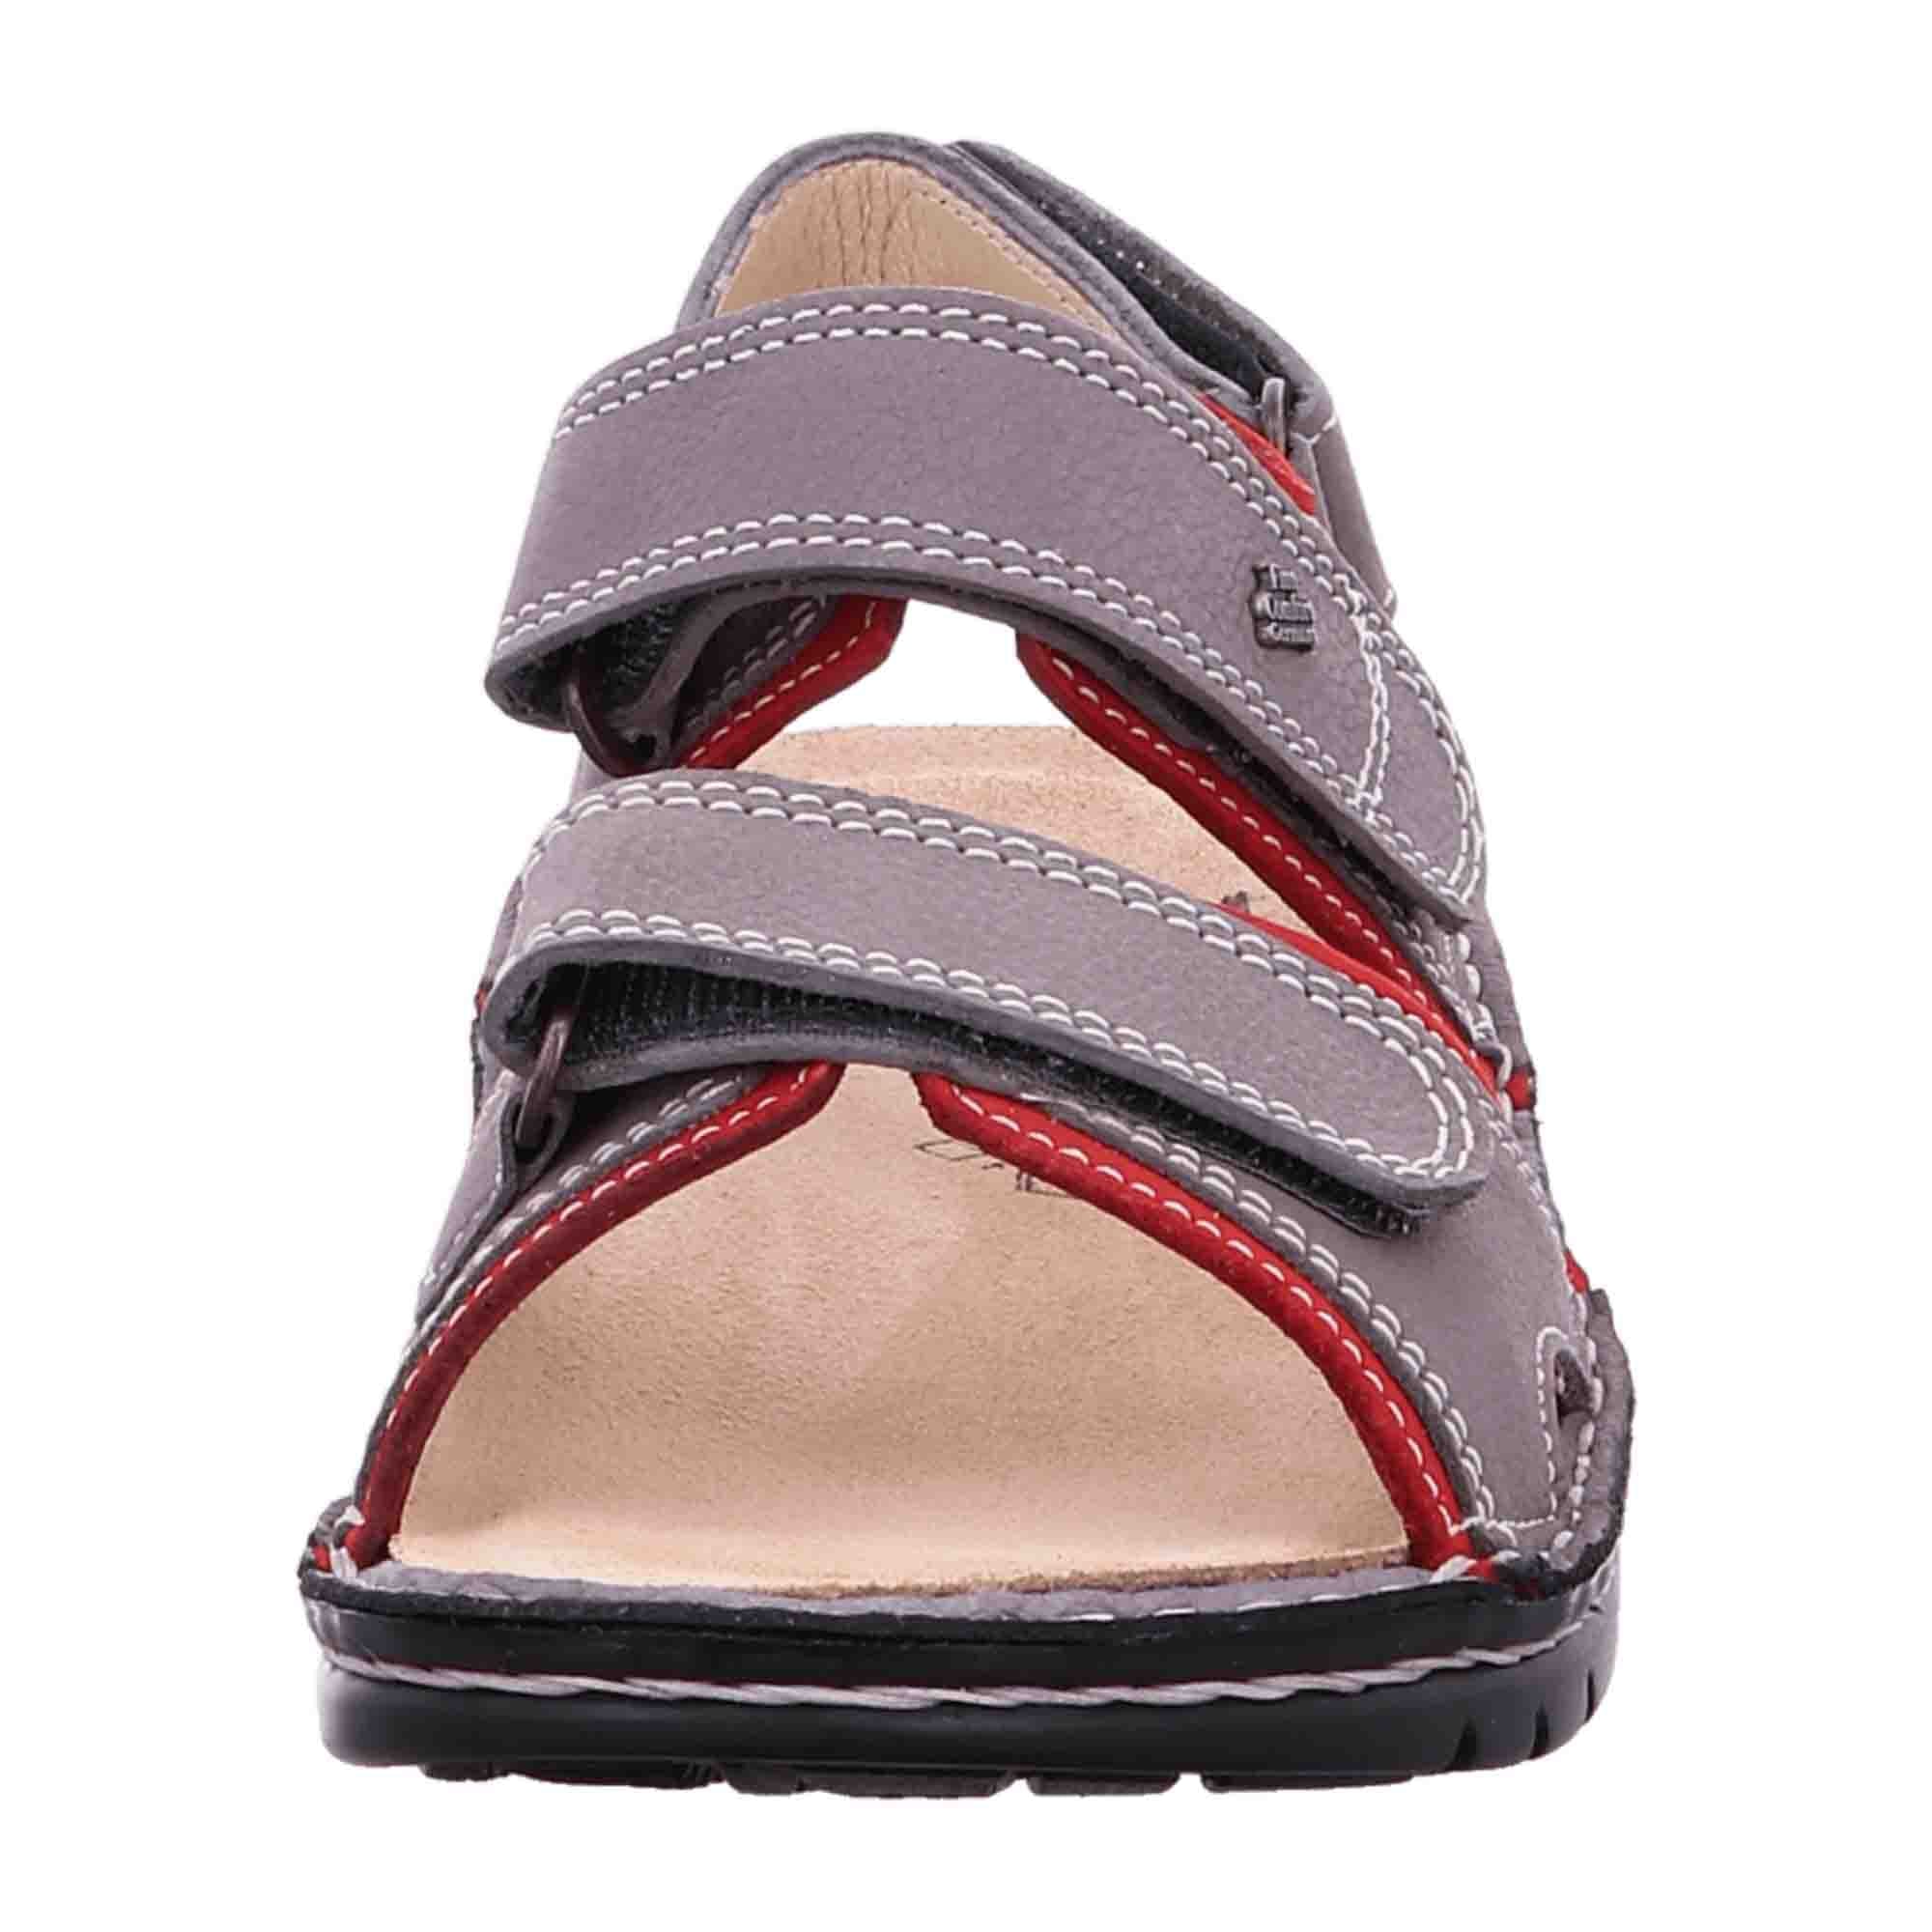 Finn Comfort Yuma Women's Sandals - Stylish & Durable in Grey